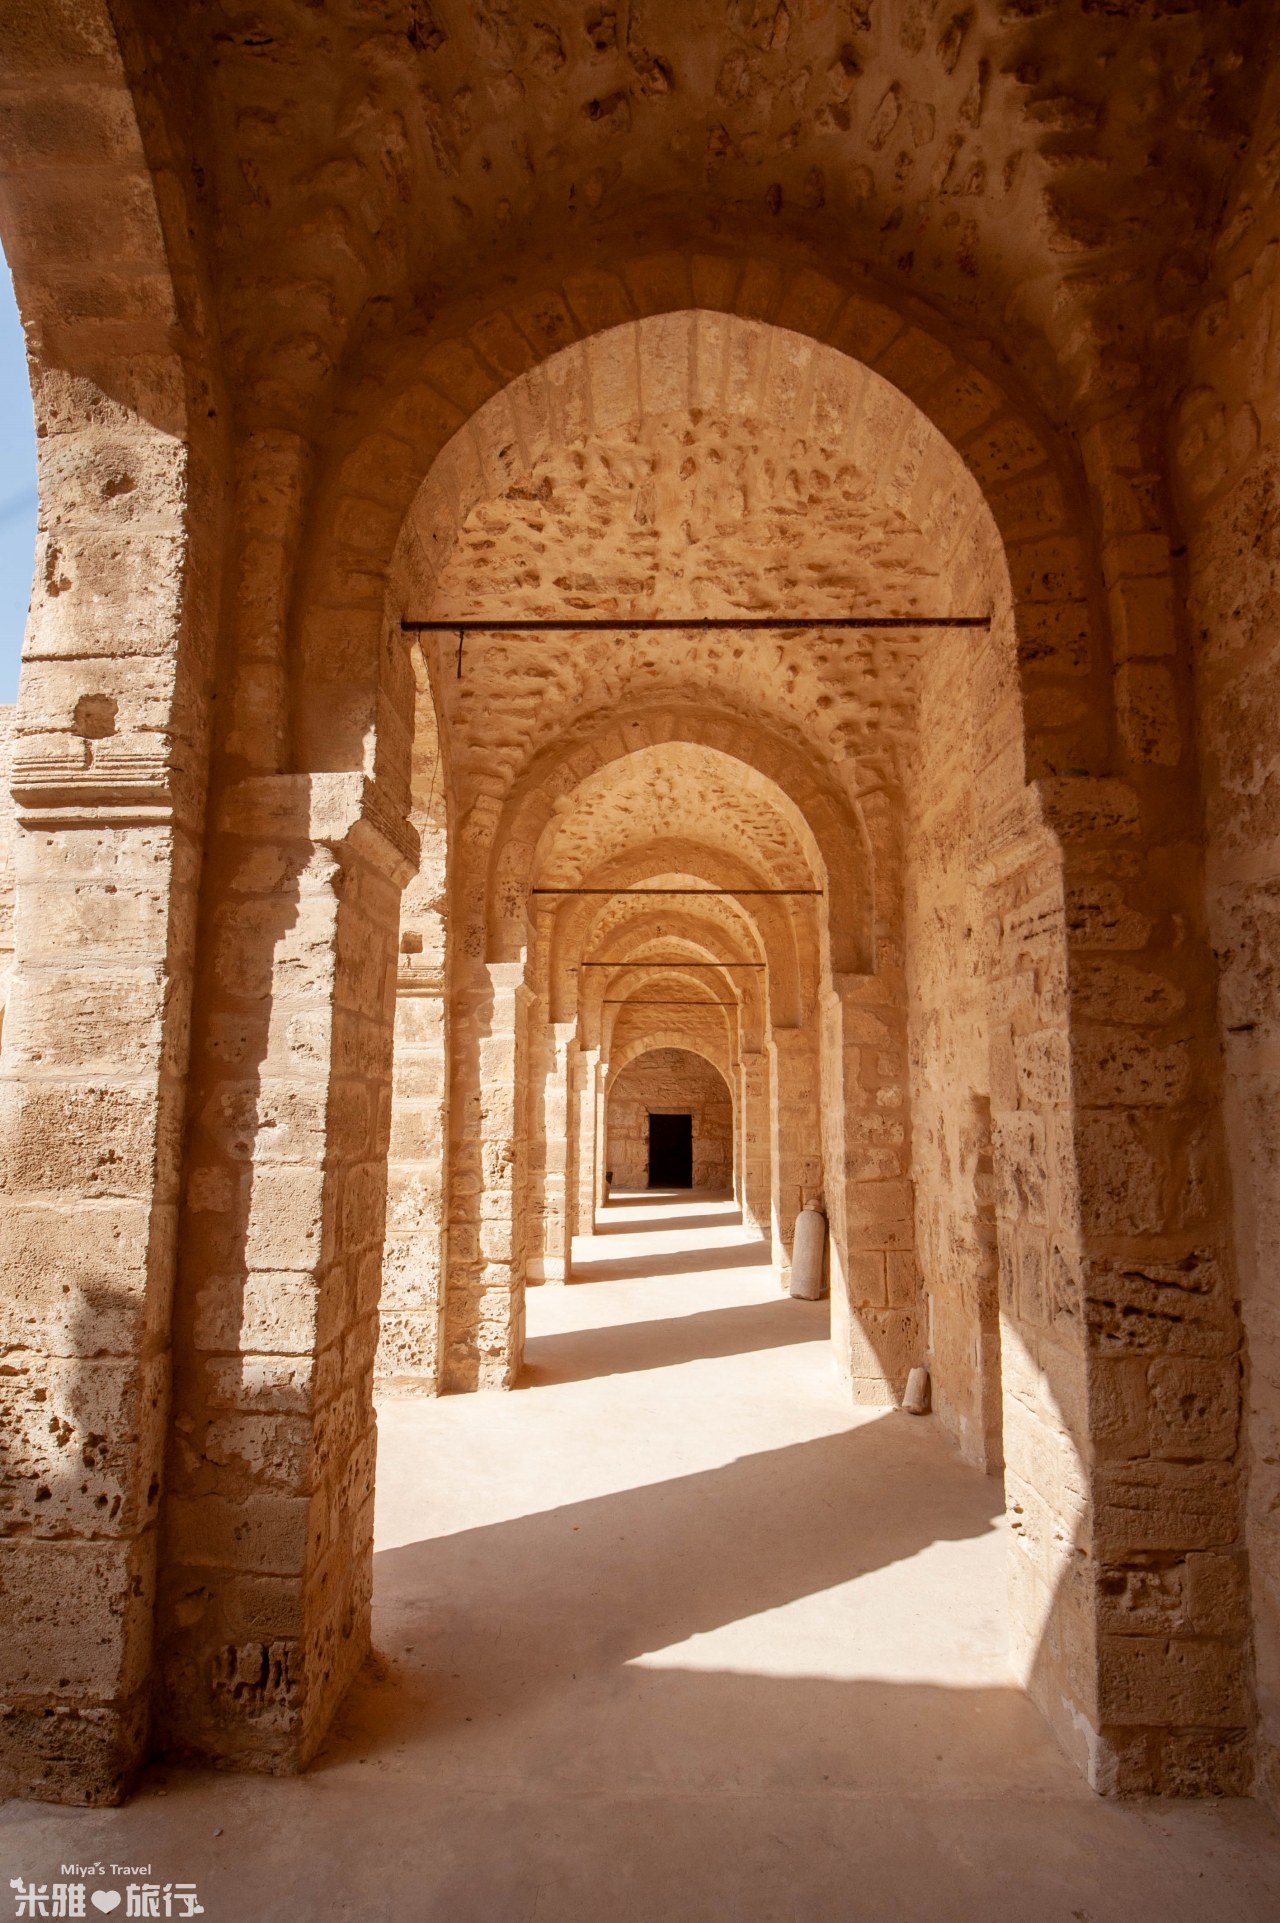 突尼西亞蘇斯Sousse蘇斯古城Medina of Sousse by米雅愛旅行